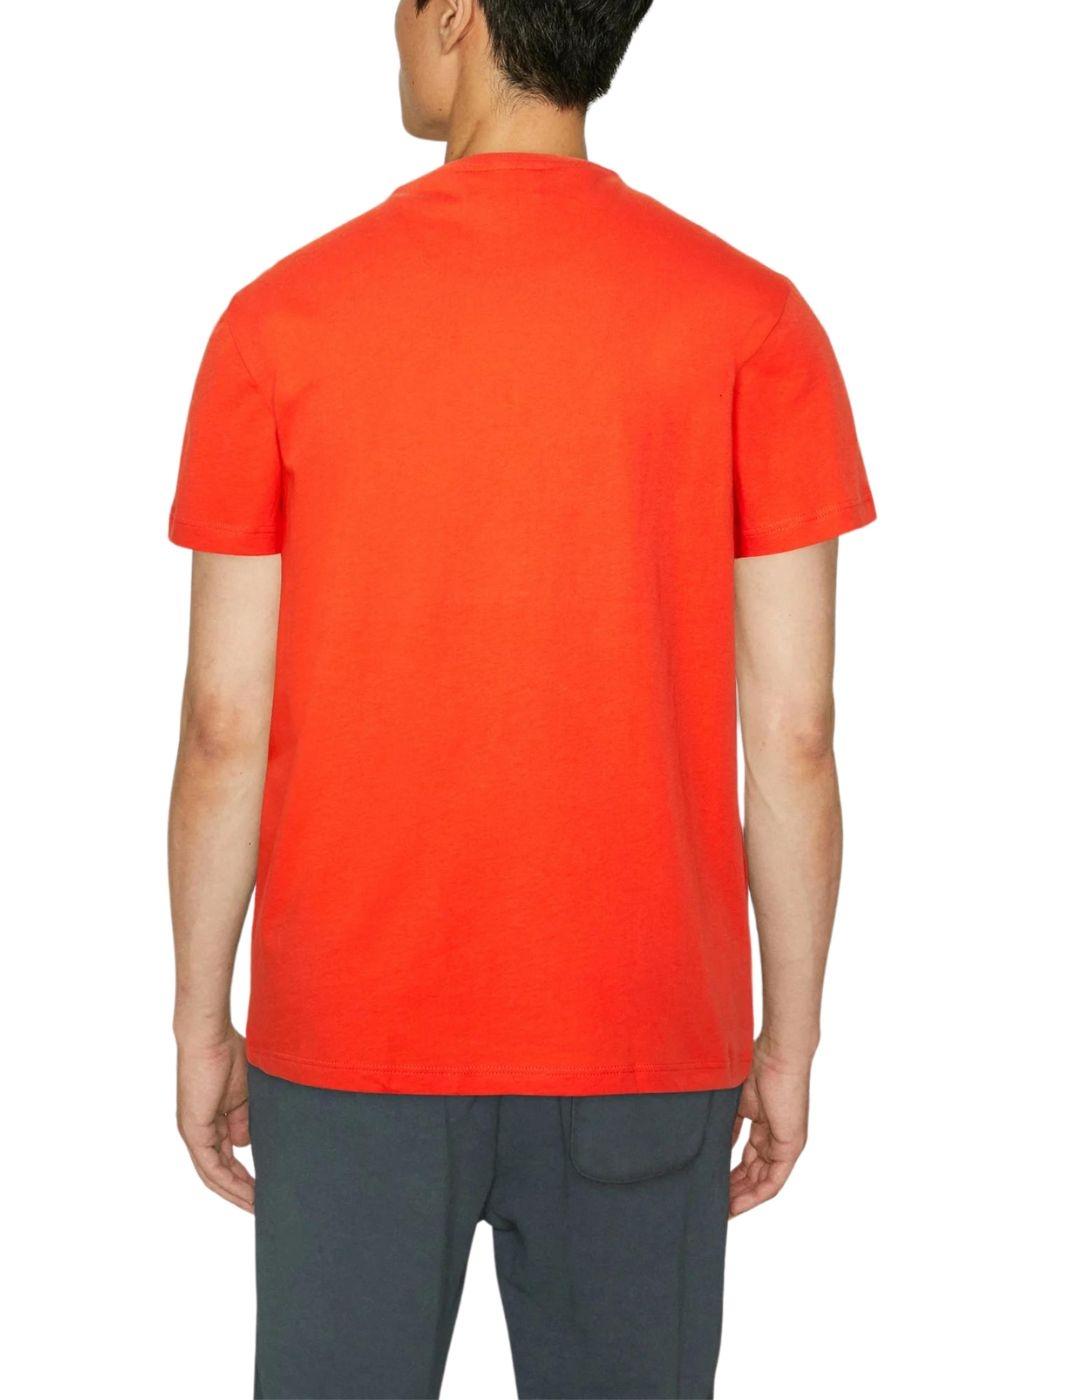 Camiseta Lacoste básica para hombre de cuello rendondo